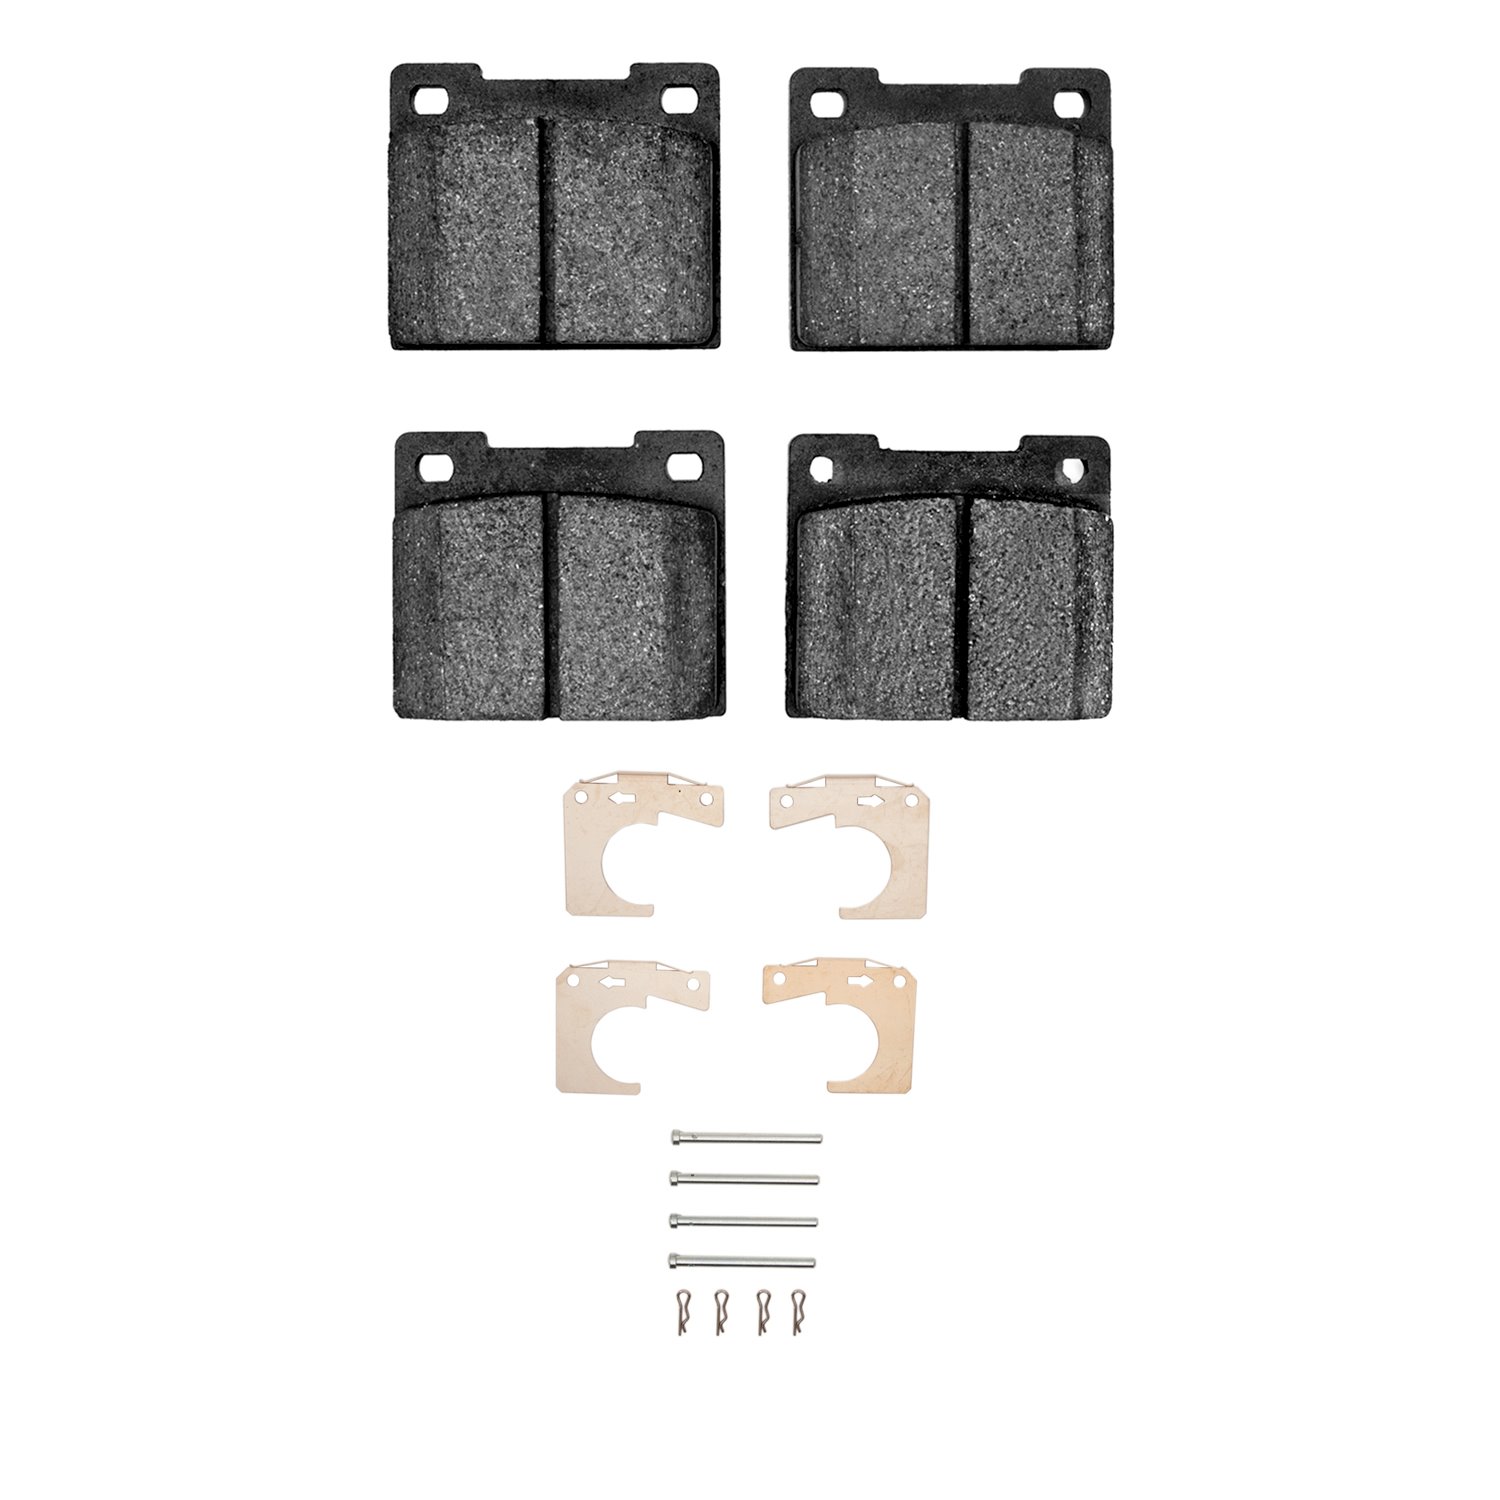 Ceramic Brake Pads & Hardware Kit, 1965-1980 Fits Multiple Makes/Models, Position: Front